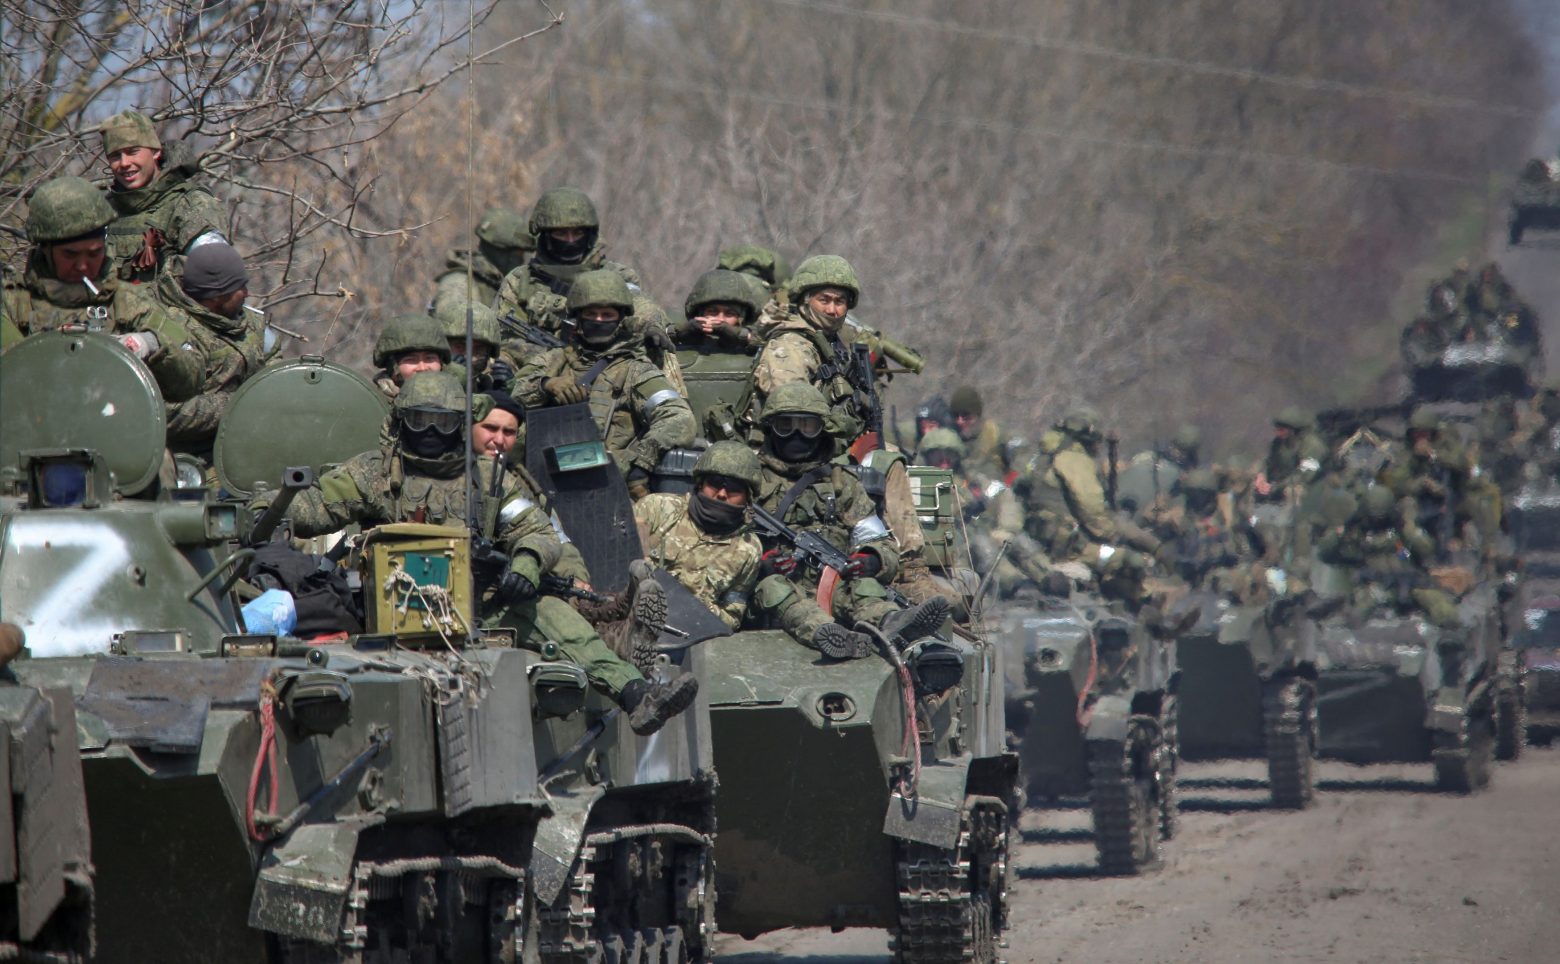 Βρετανοί εκπαιδευτές στον ουκρανικό στρατό;